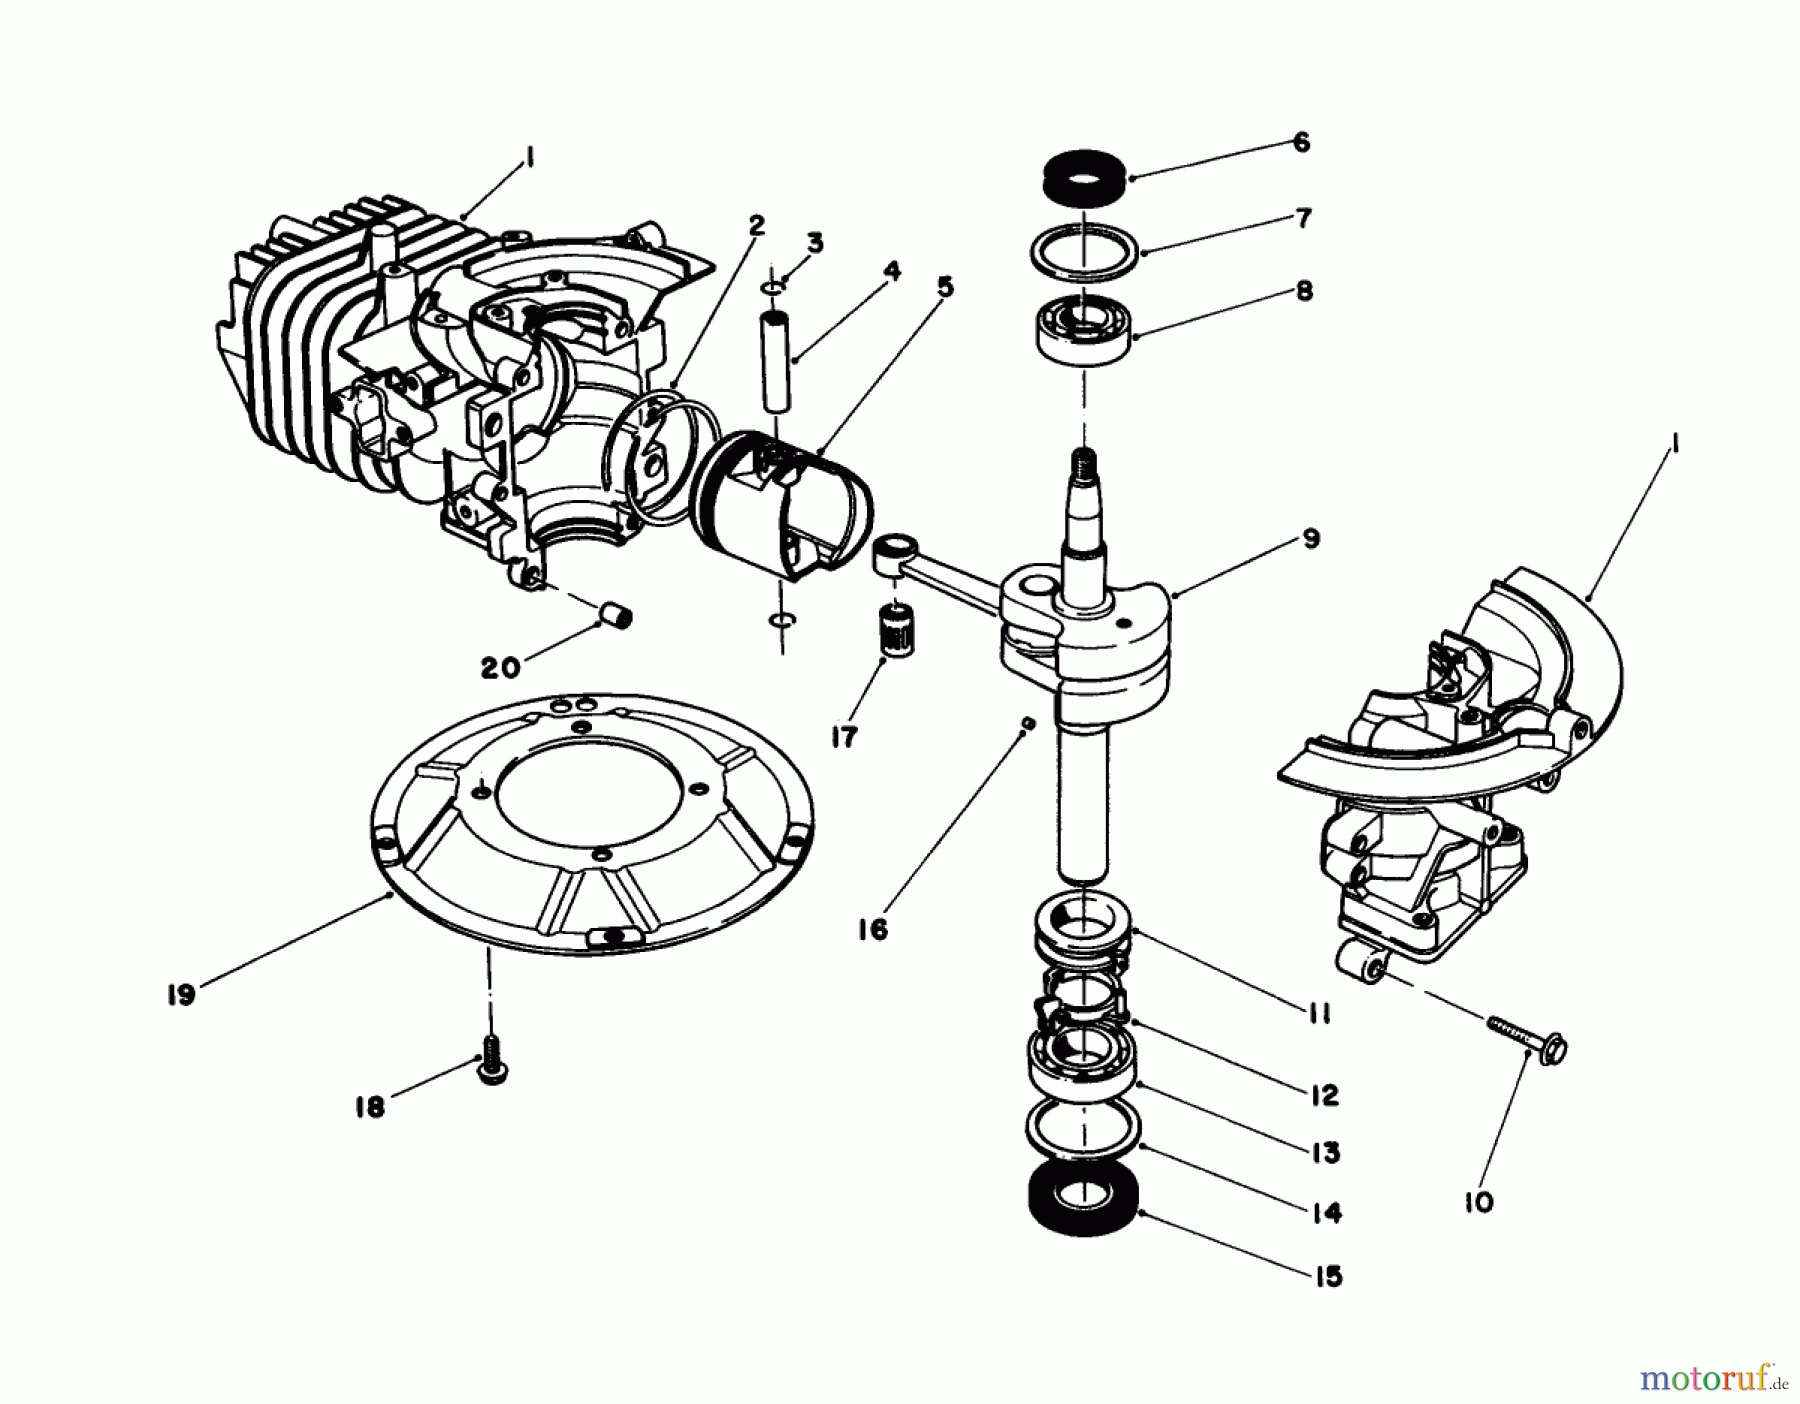  Toro Neu Engines 59257 - Toro Replacement Engine, 2-Cycle (Zone Start), 1985 (5000001-5999999) SHORT BLOCK ASSEMBLY